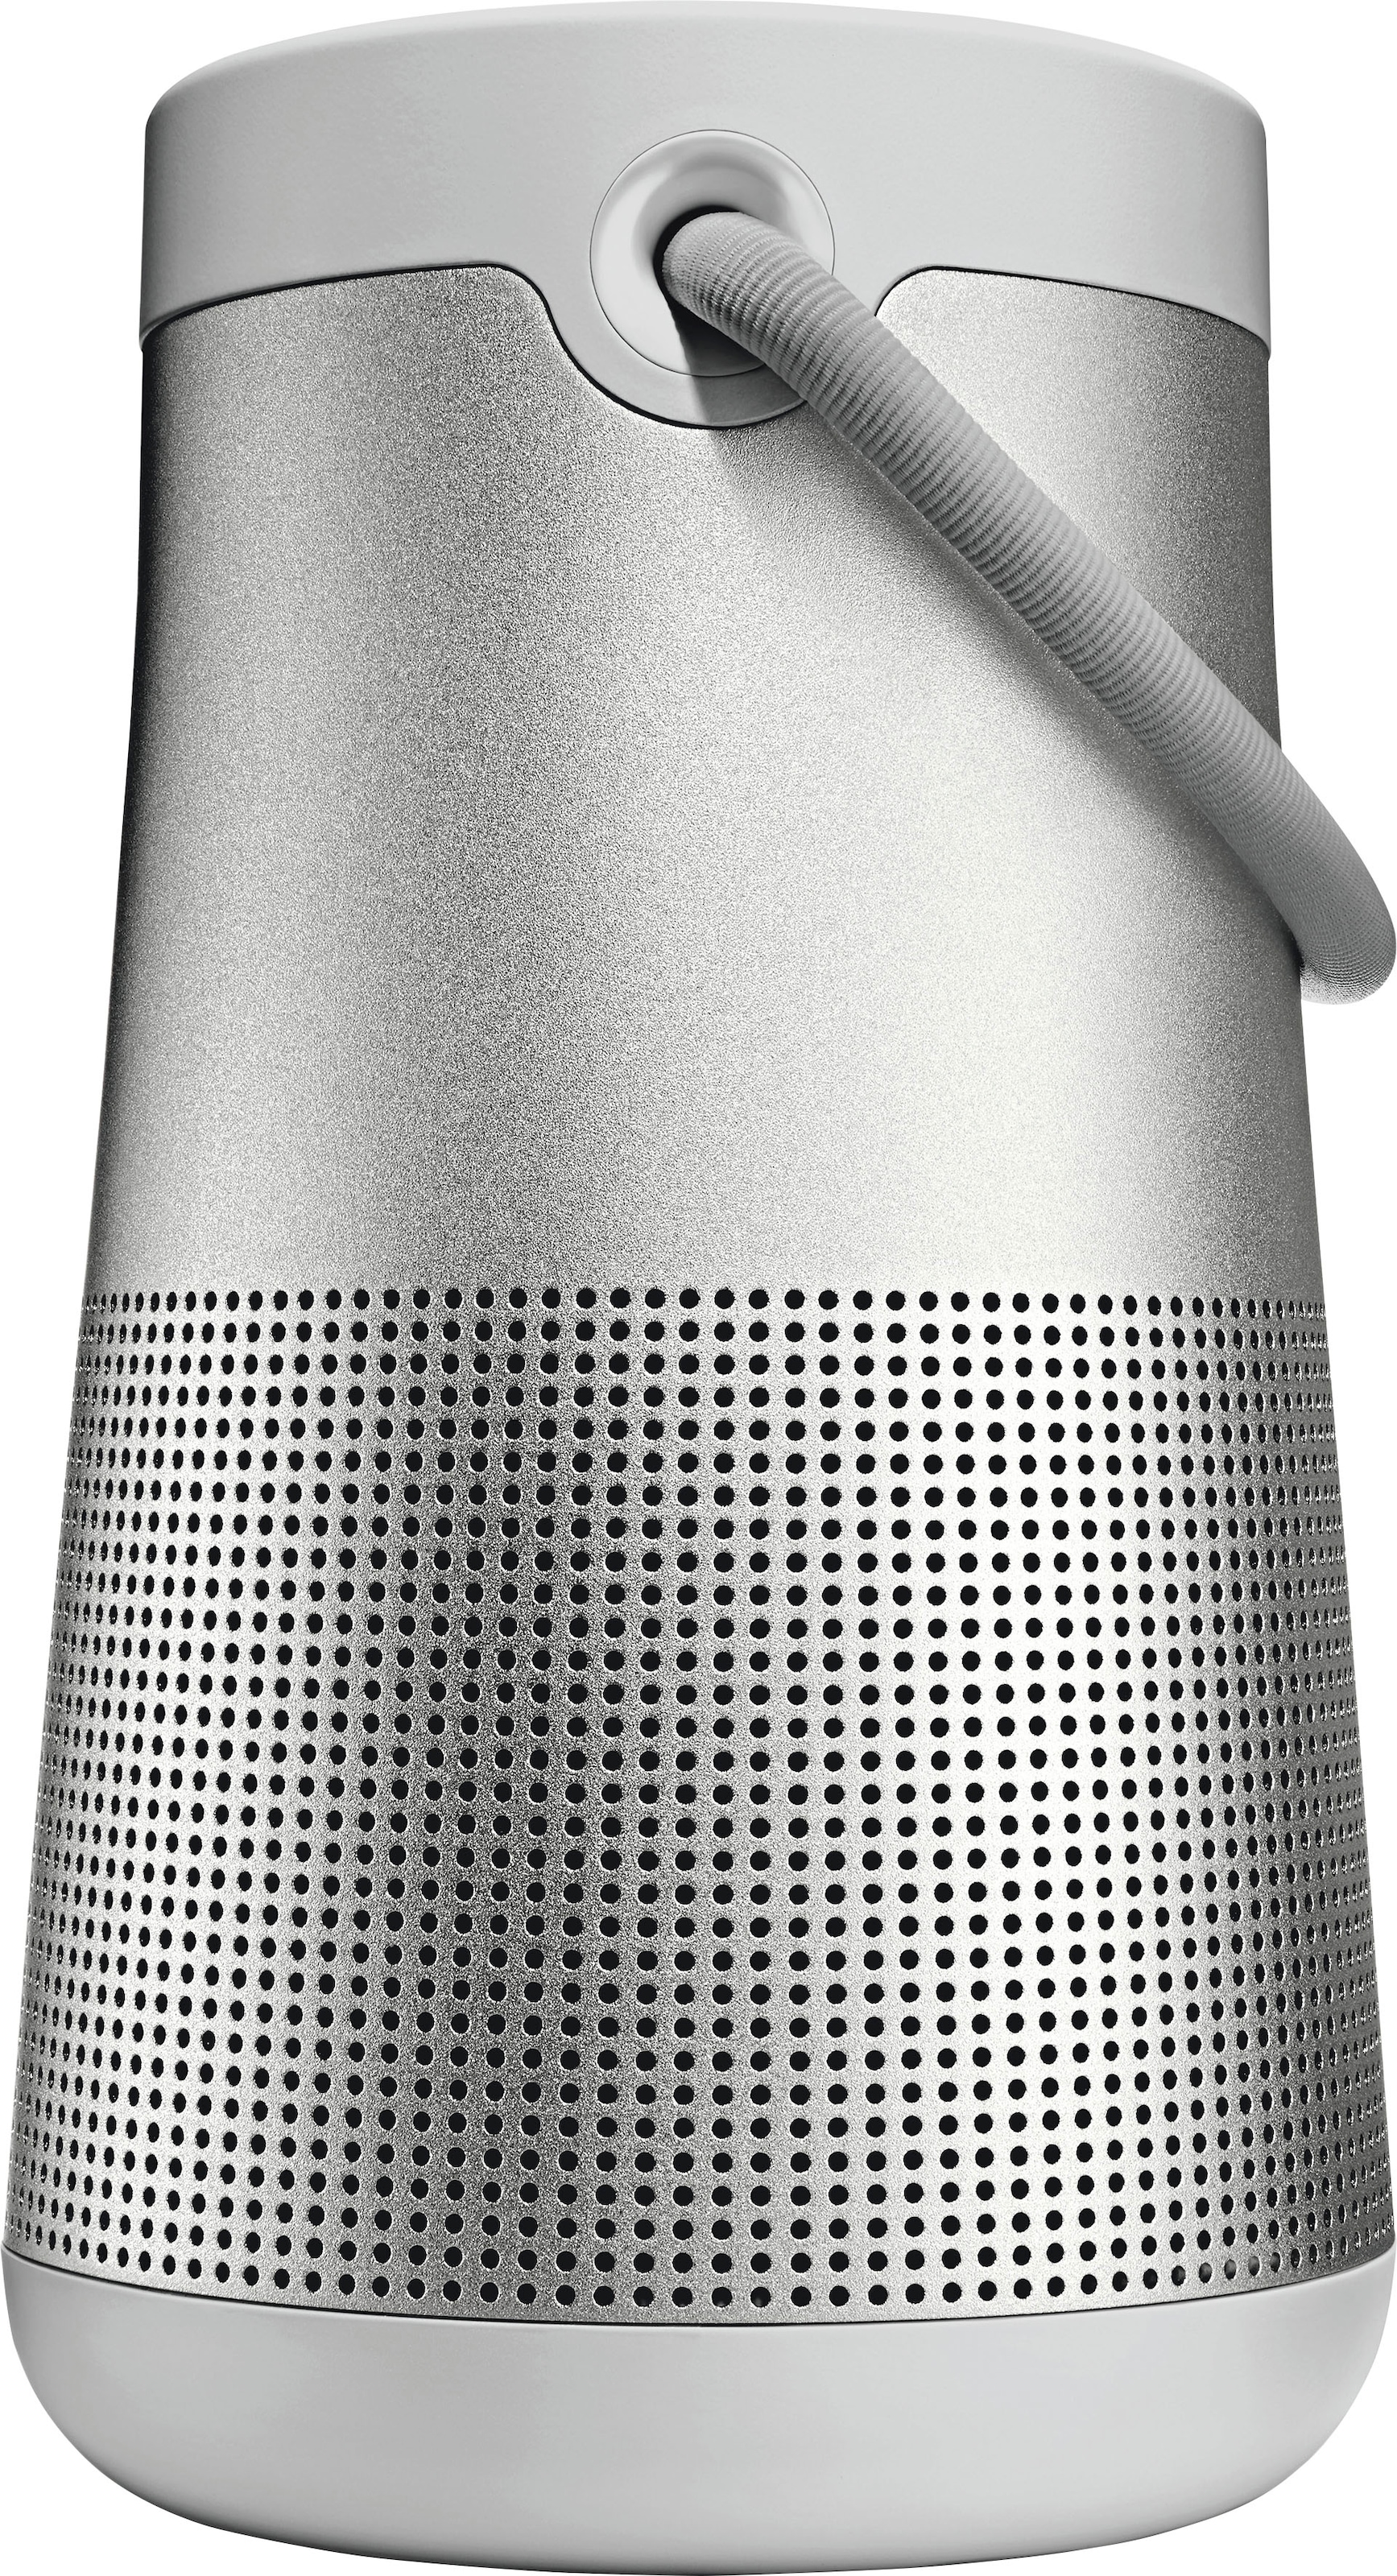 Bose Bluetooth-Lautsprecher »SoundLink Revolve+ II«, IP55 Wasserabweisend, 360°-Klang, Partymodus: Lautsprecher koppeln